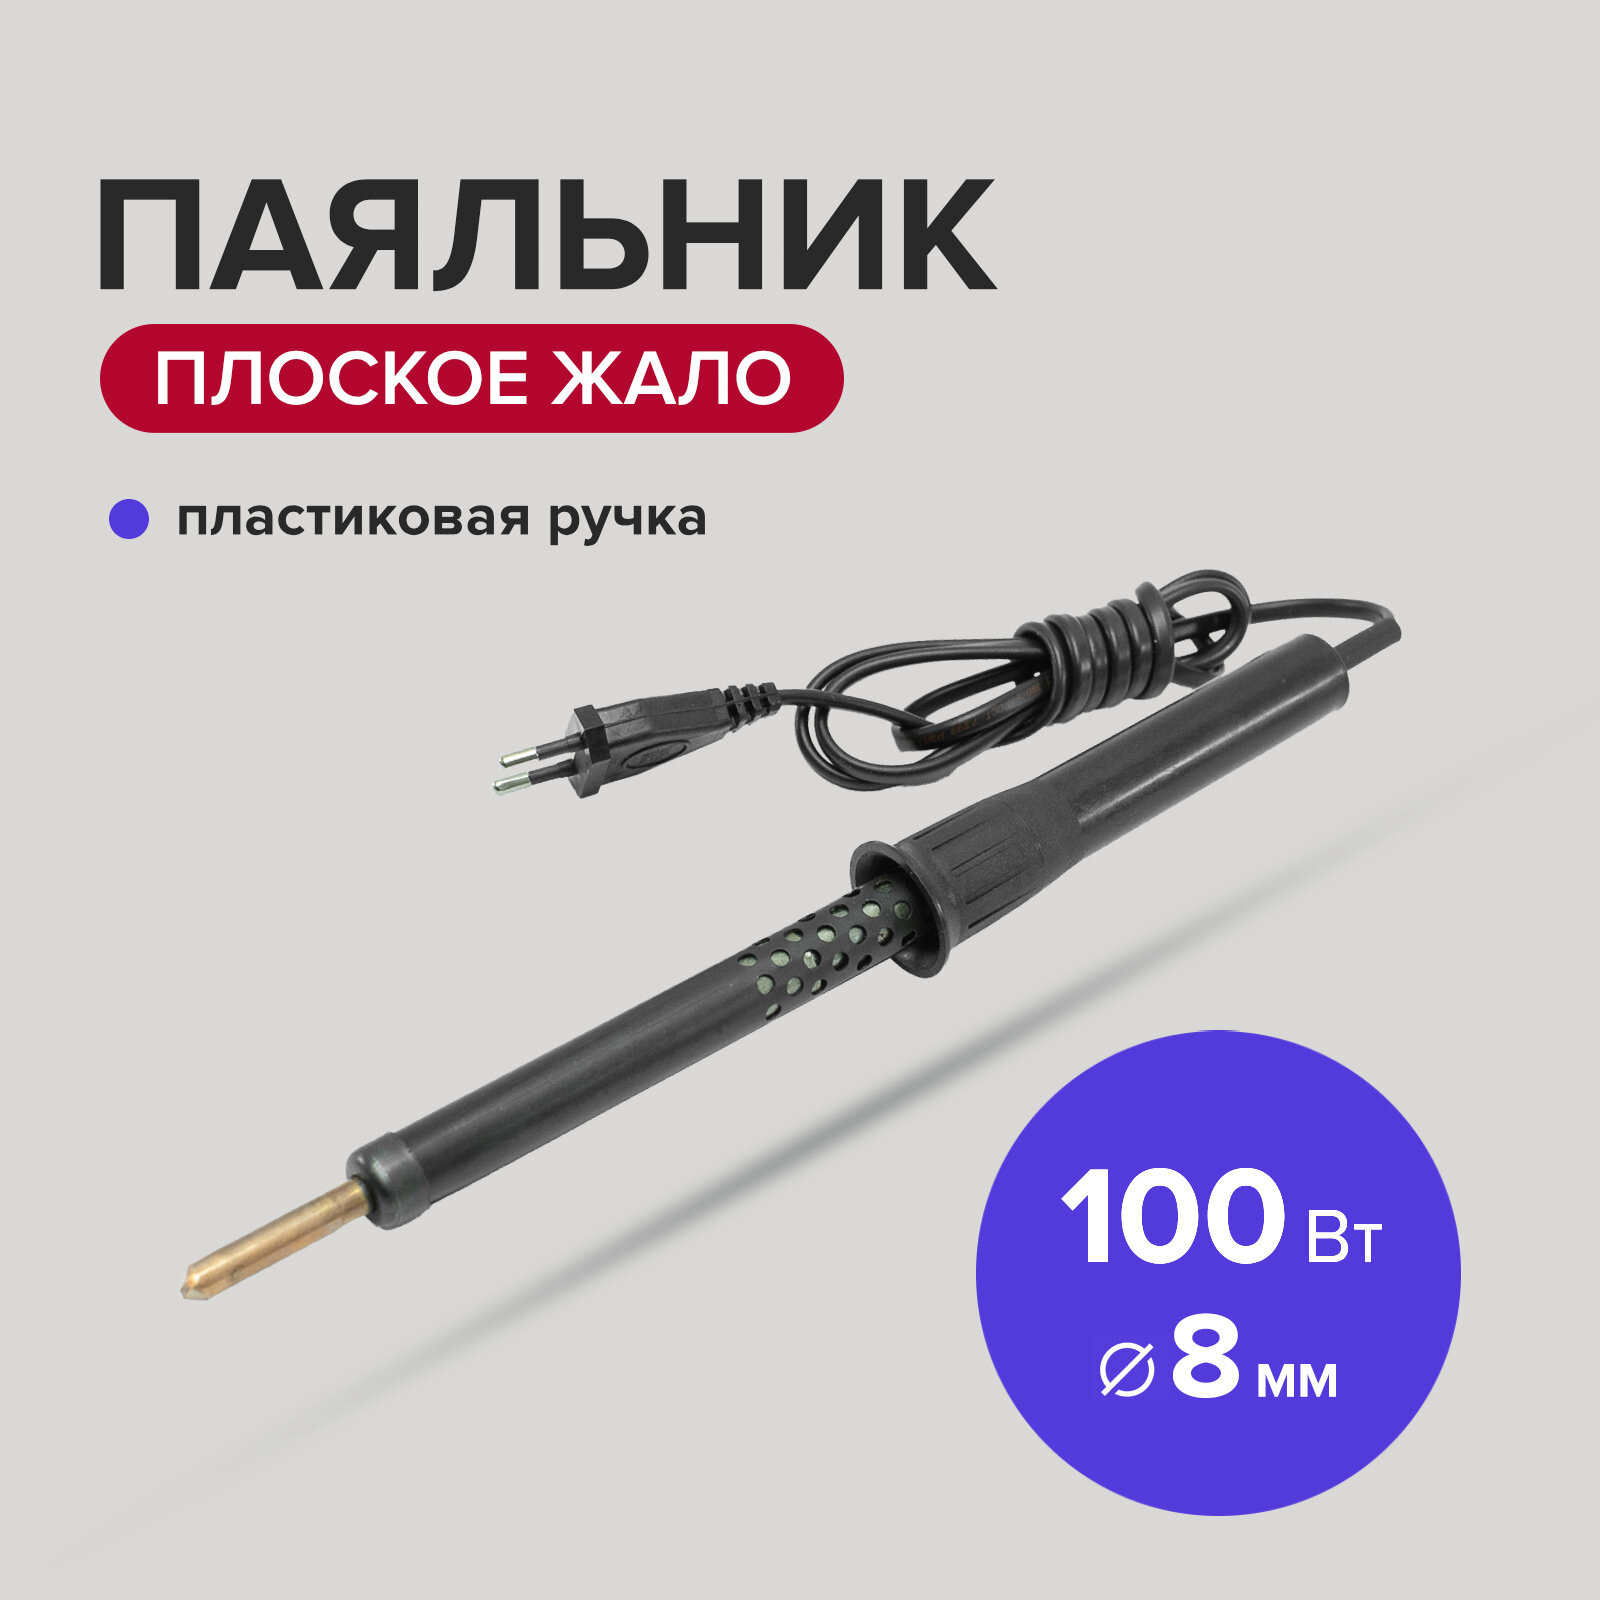 Паяльник электрический 100 Вт жало 8 мм с пластиковой ручкой Политех Инструмент